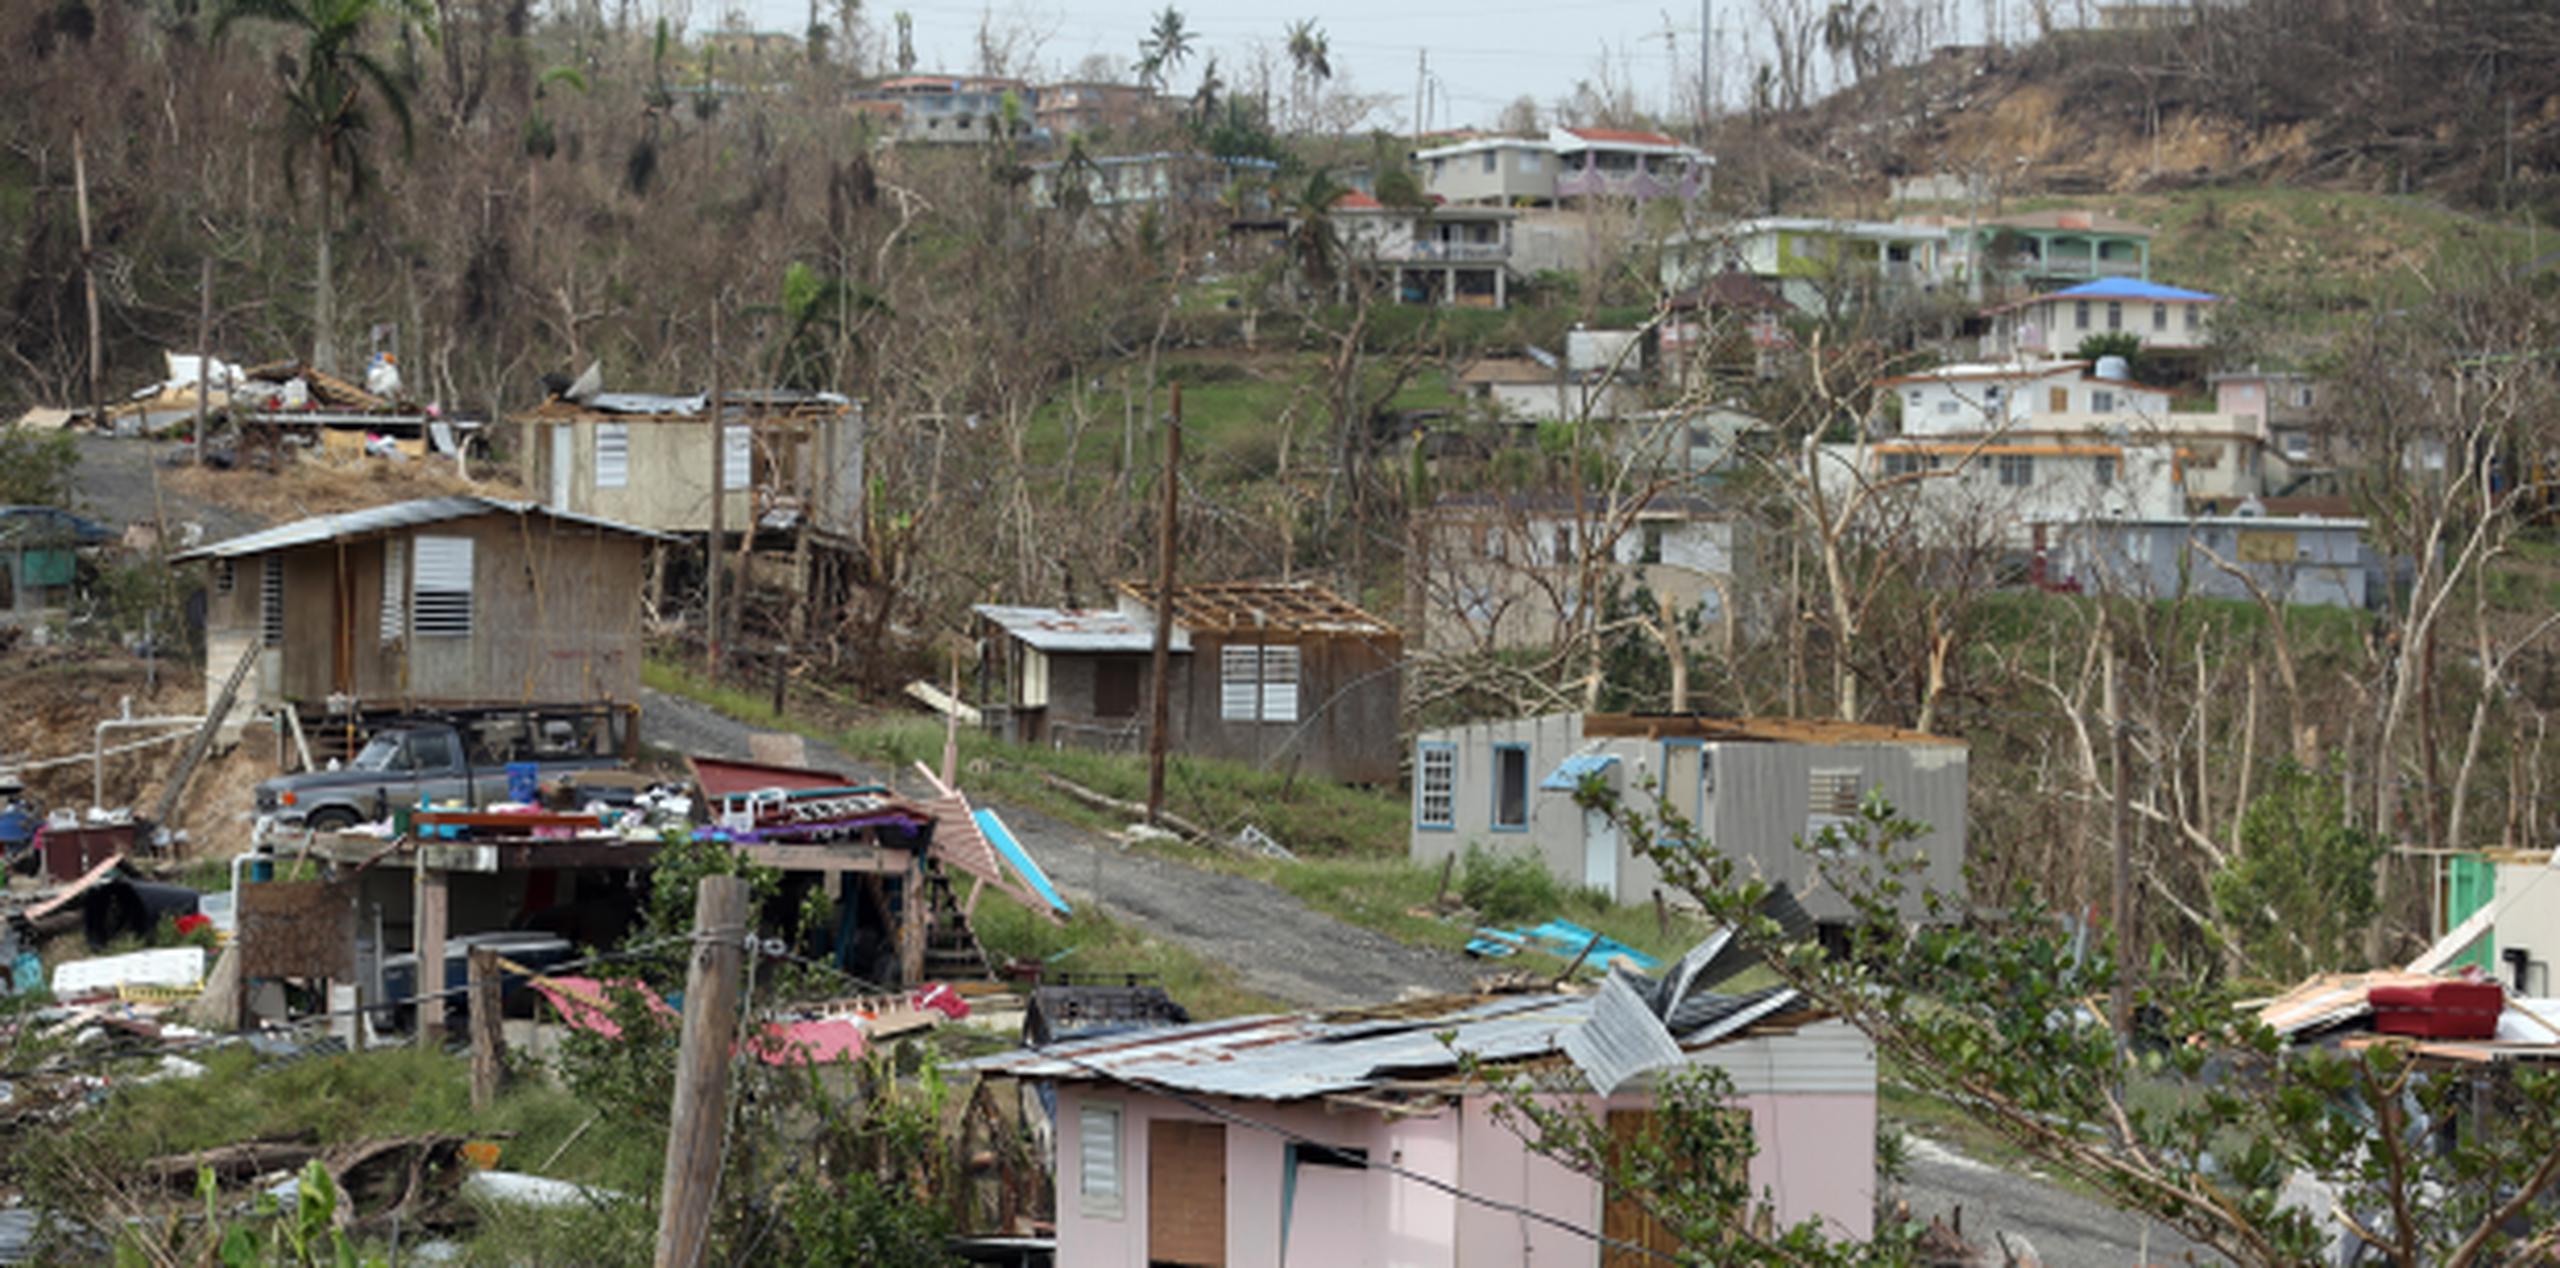 Daños causados por el huracán María en el sector Villa Josco en Toa Alta. (juan.martinez@gfrmedia.com)